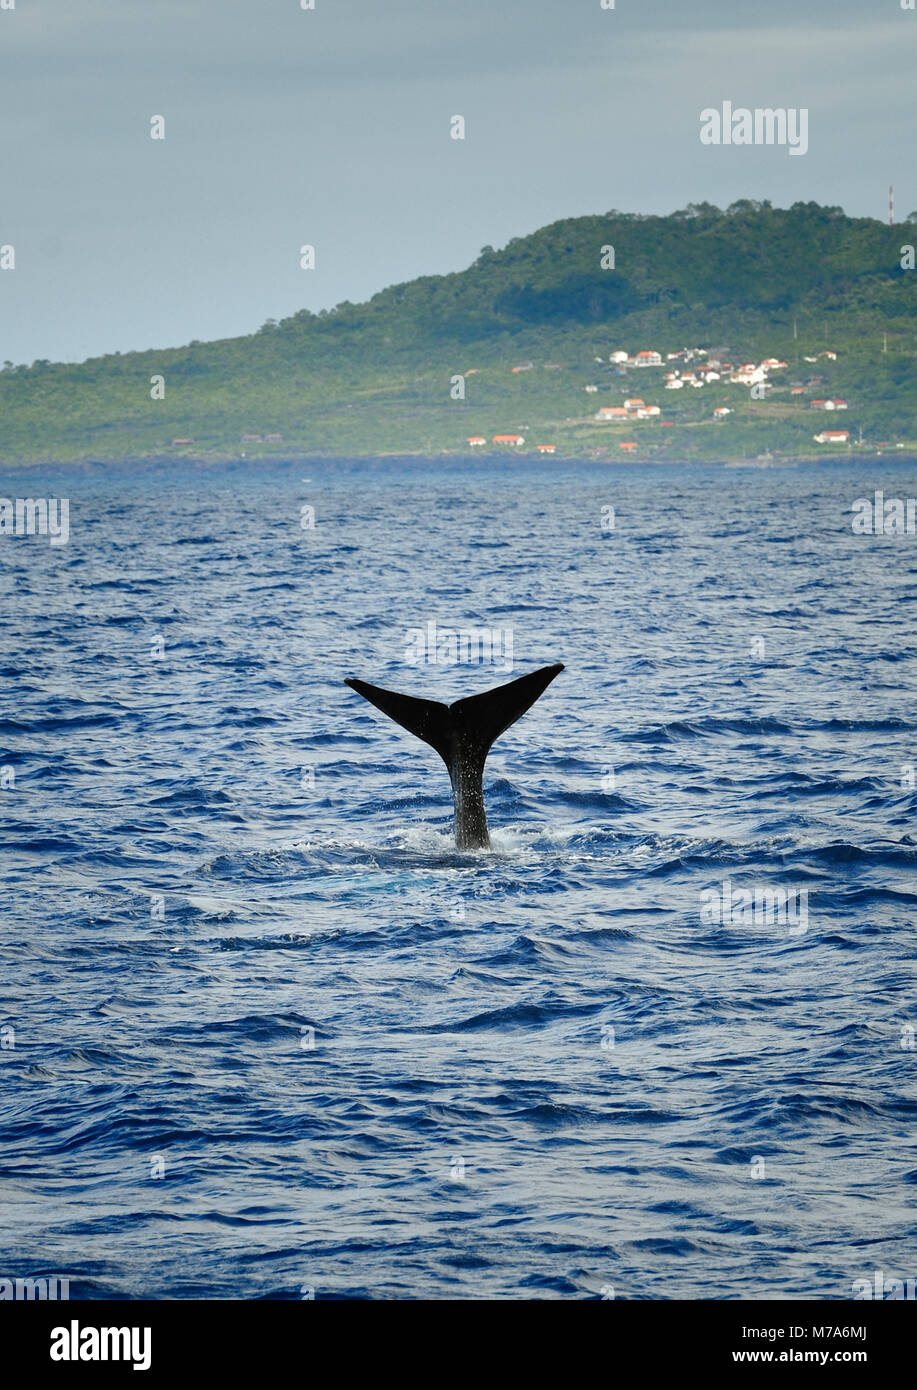 La coda di un capodoglio nei pressi dell'isola di Pico. Isole Azzorre, Portogallo Foto Stock